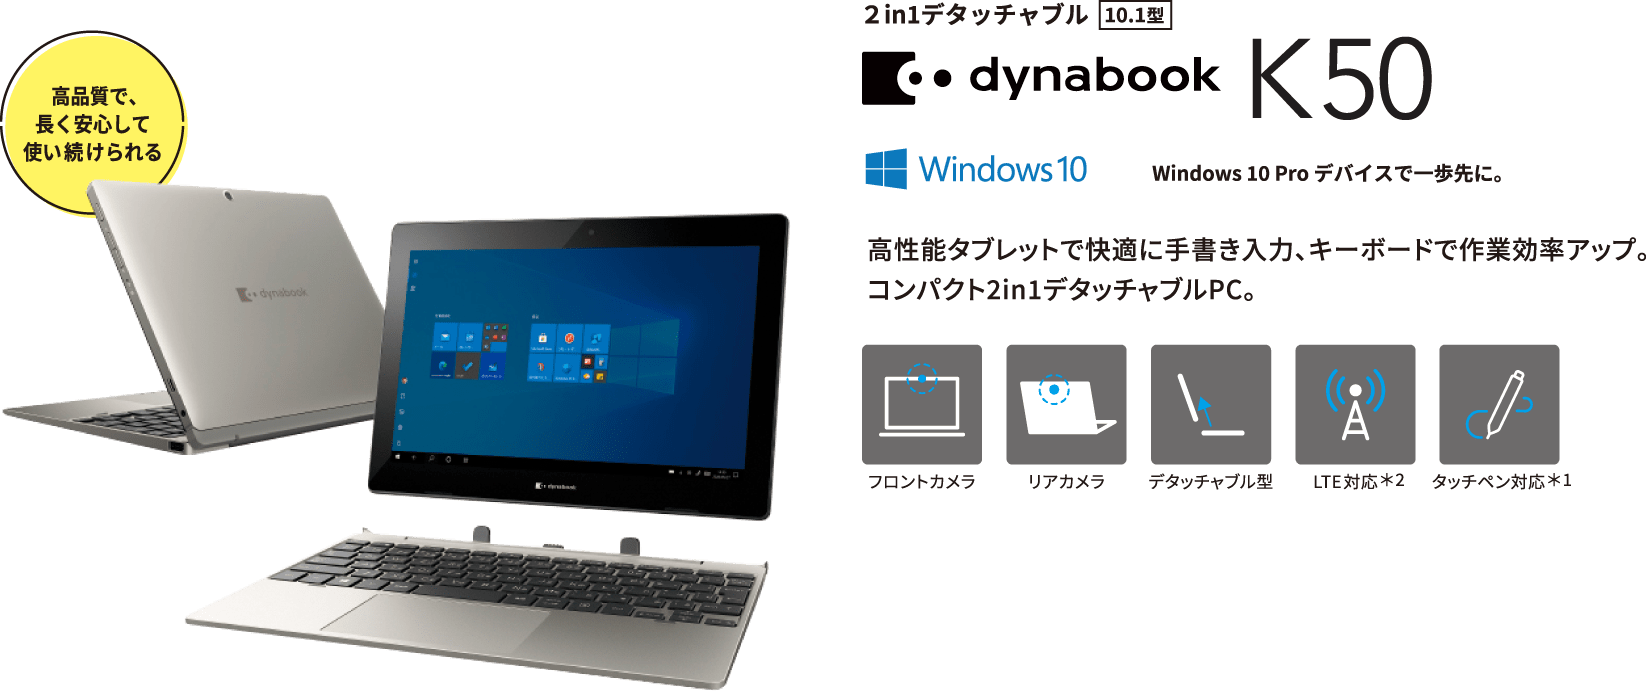 dynabook K50 高性能タブレットで快適に手書き入力、キーボードで作業効率アップ。コンパクト2in1デタッチャブルPC。